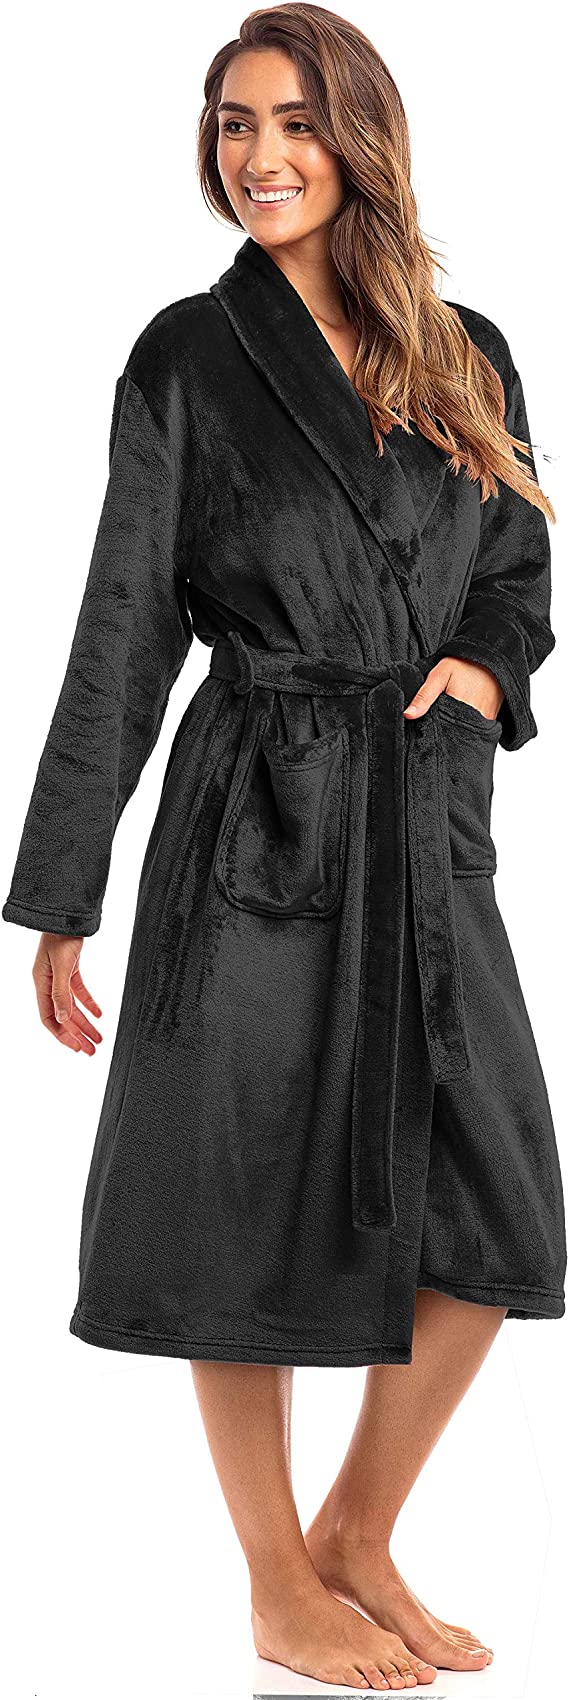 Thread Republic Spa Collection Plush Fleece Robe, Luxurious Warm & Cozy Bathrobe